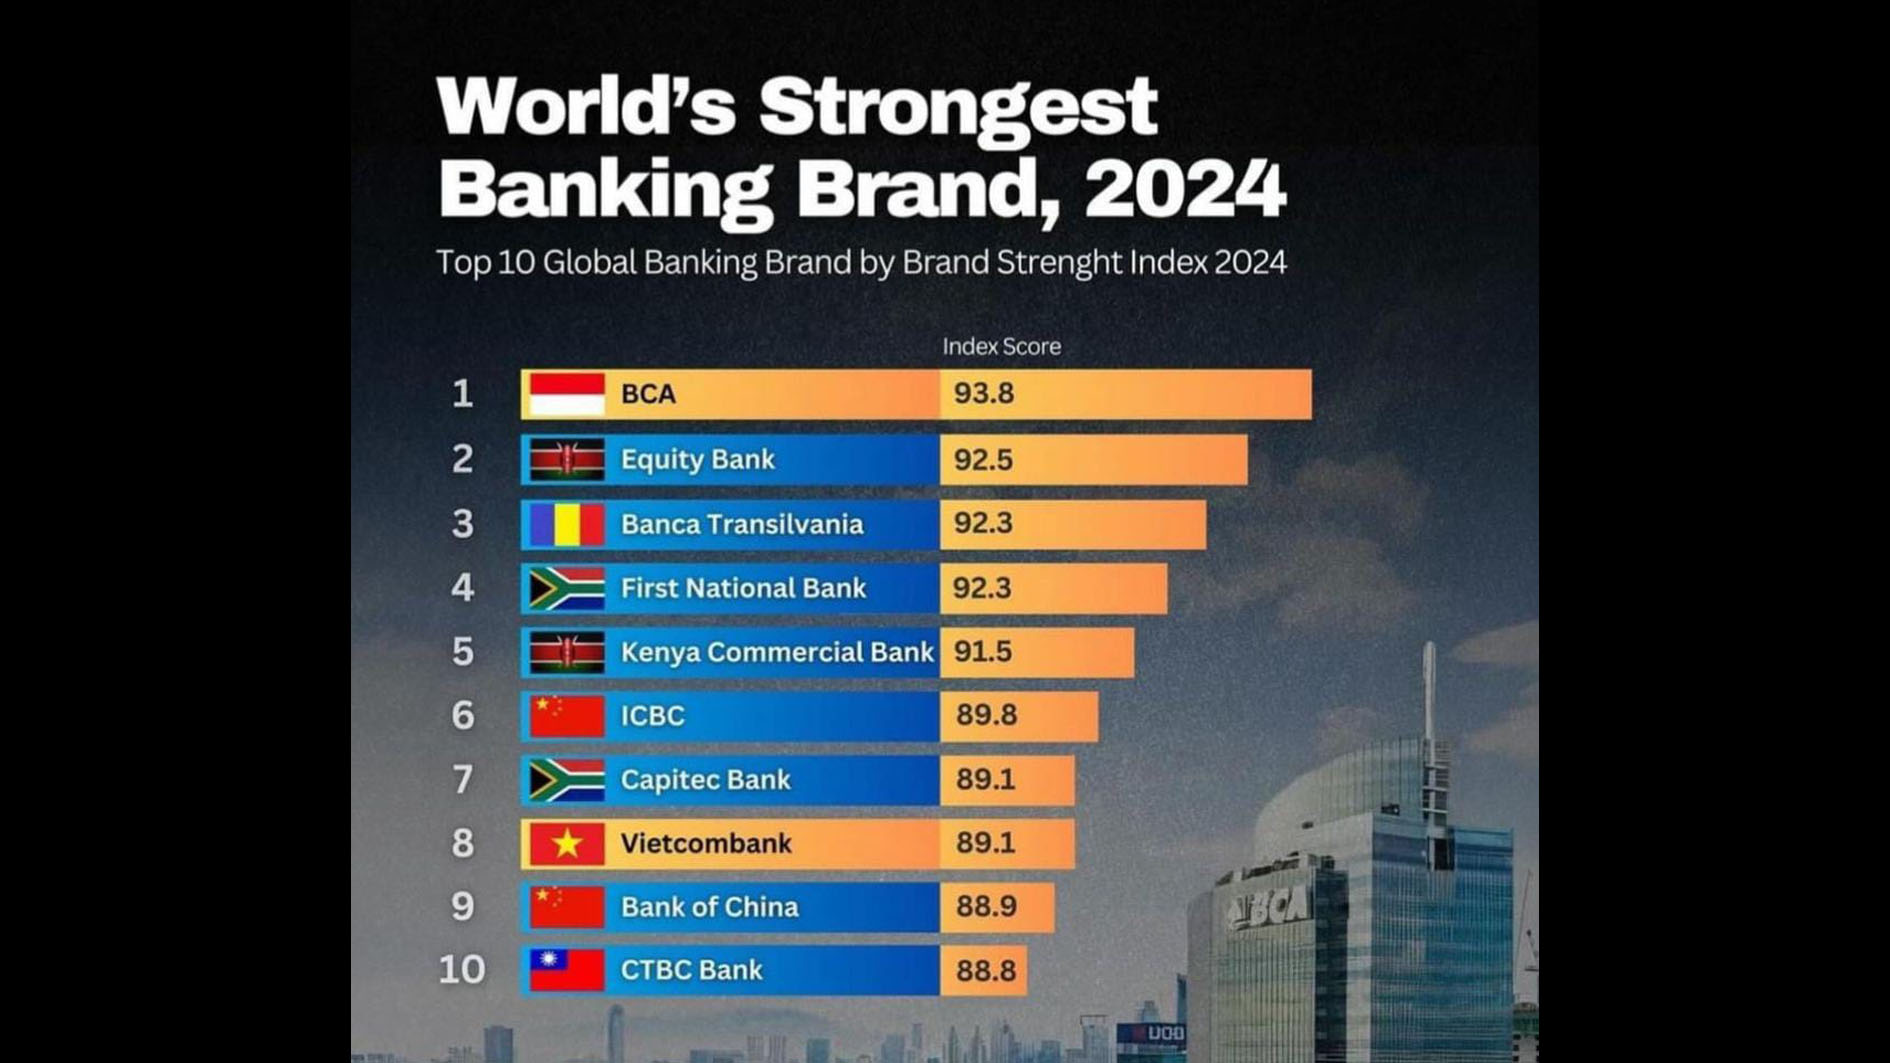 Bangga! BCA Indonesia Jadi Brand Perbankan Terkuat di Dunia, Simak Penjelasannya